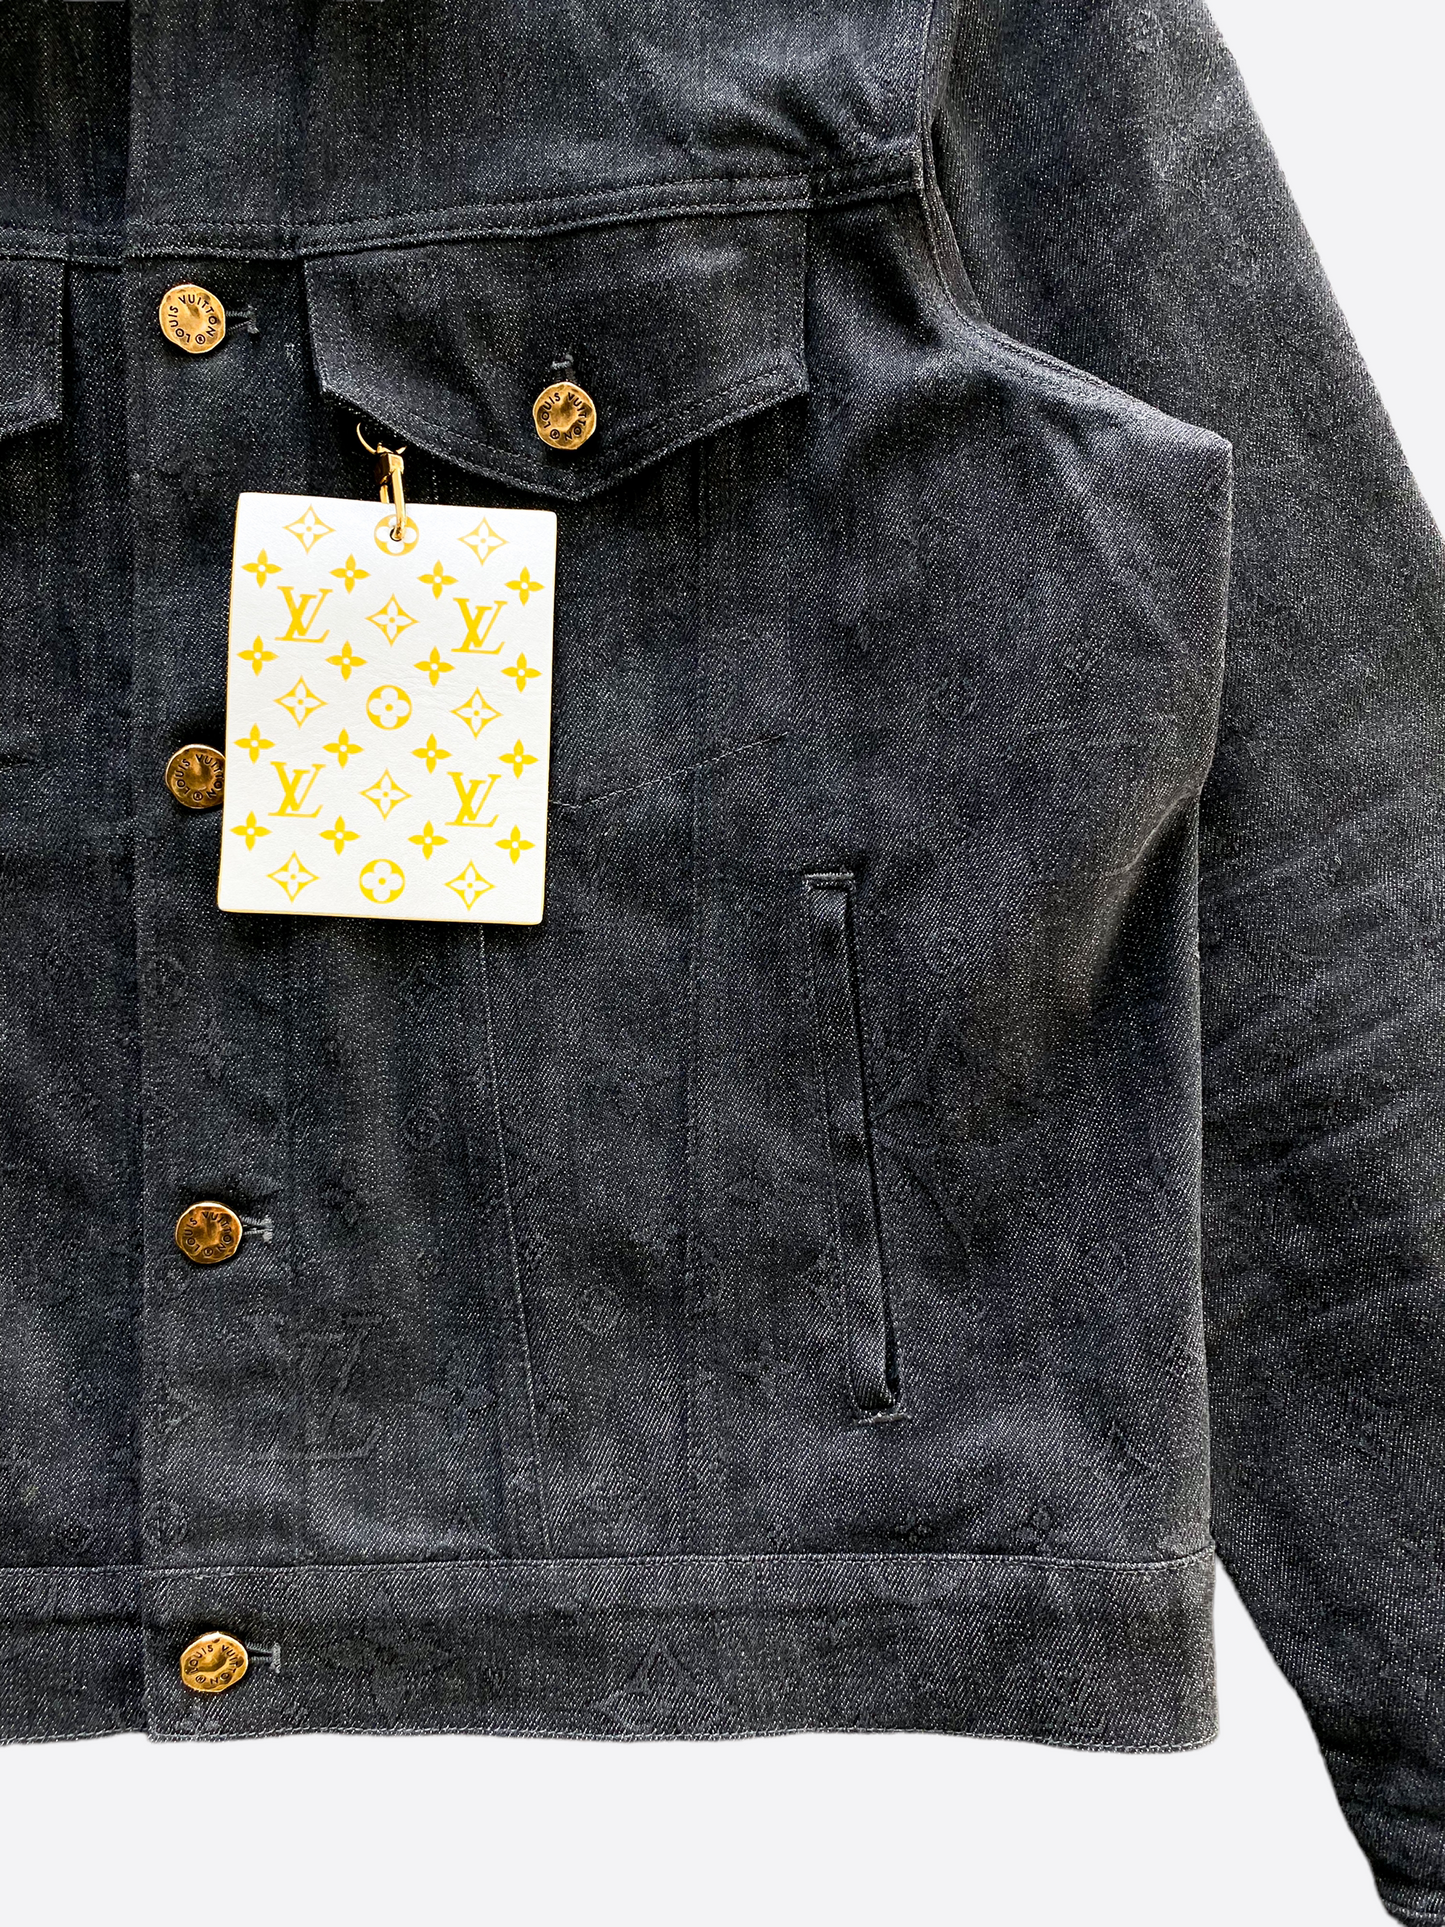 Louis Vuitton - DNA Denim Jacket - Indigo - Men - Size: 50 - Luxury